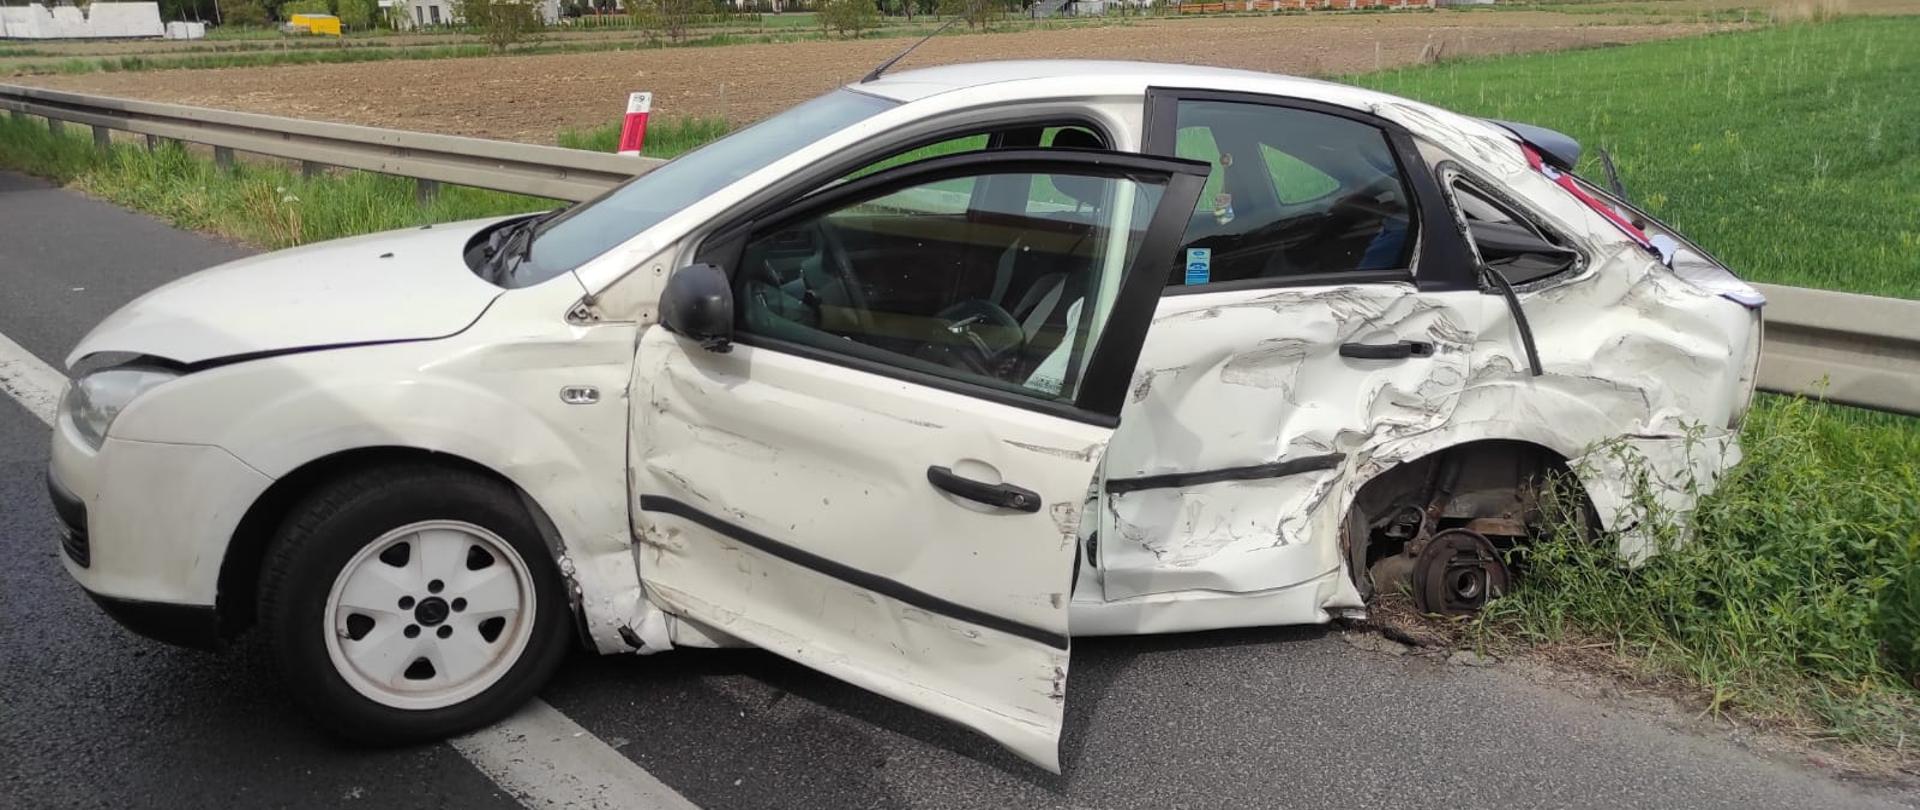 Zdjęcie przedstawia samochód osobowy po wypadku komunikacyjnym.